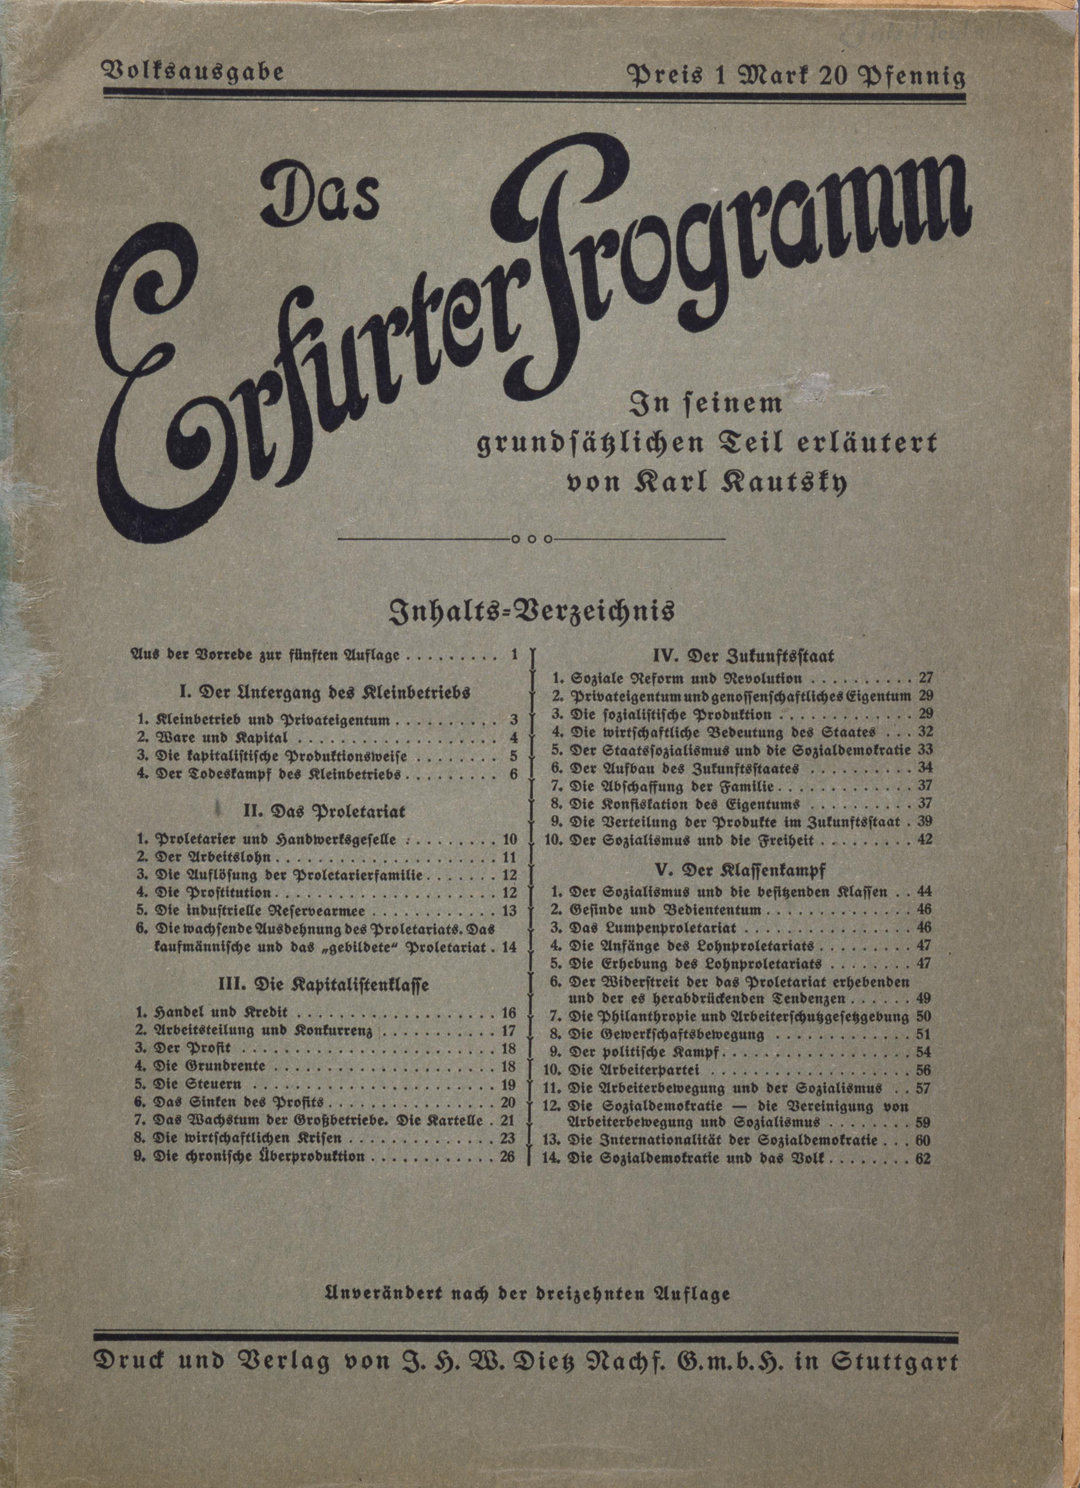 Dokument: Das Erfurter Programm von 1891